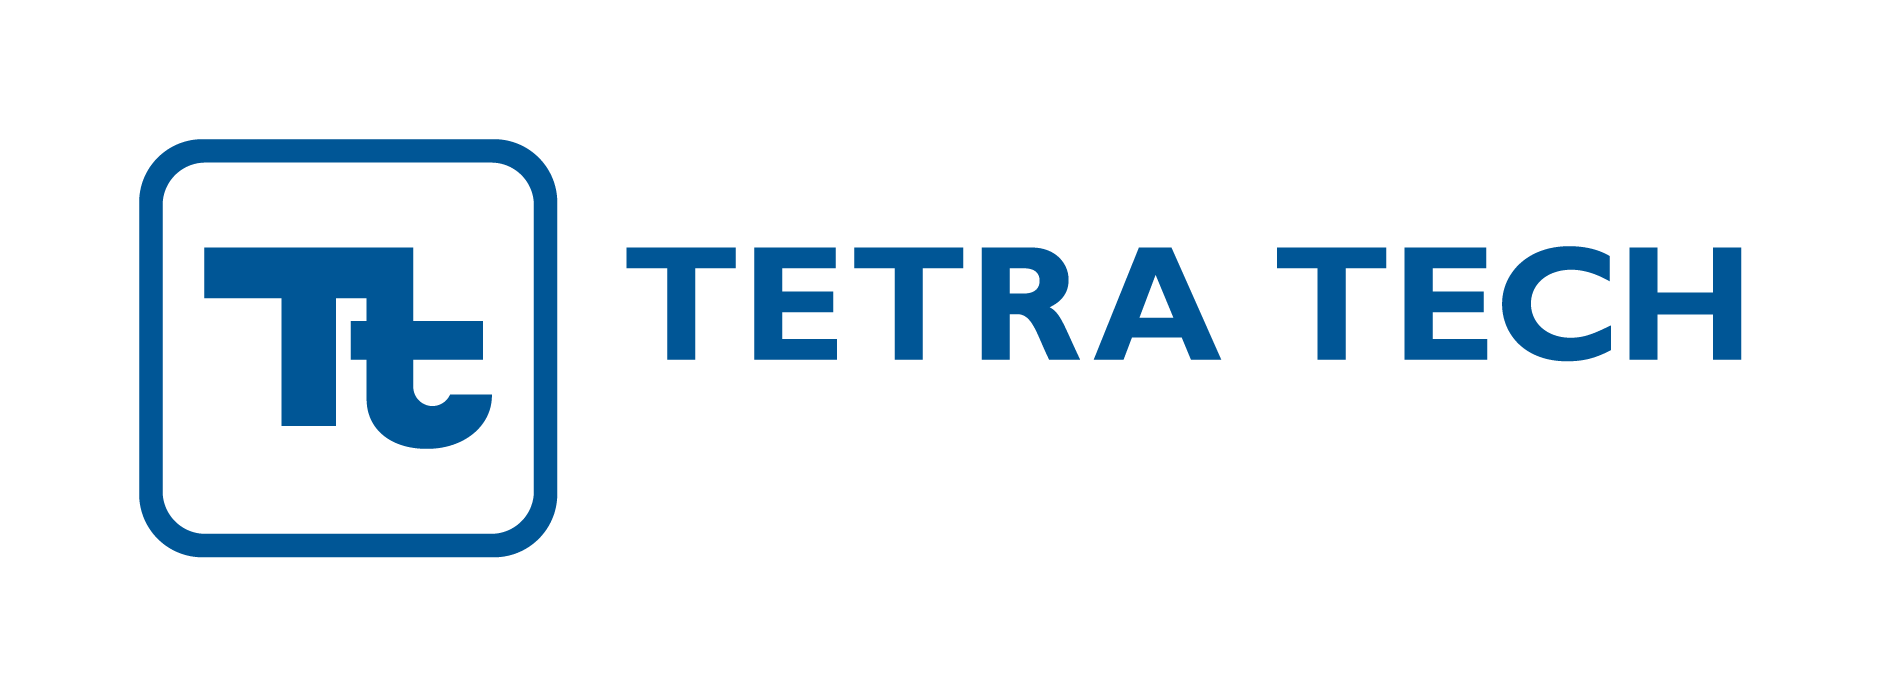 Tetra Tech Buys International Development Consultancy Kaizen